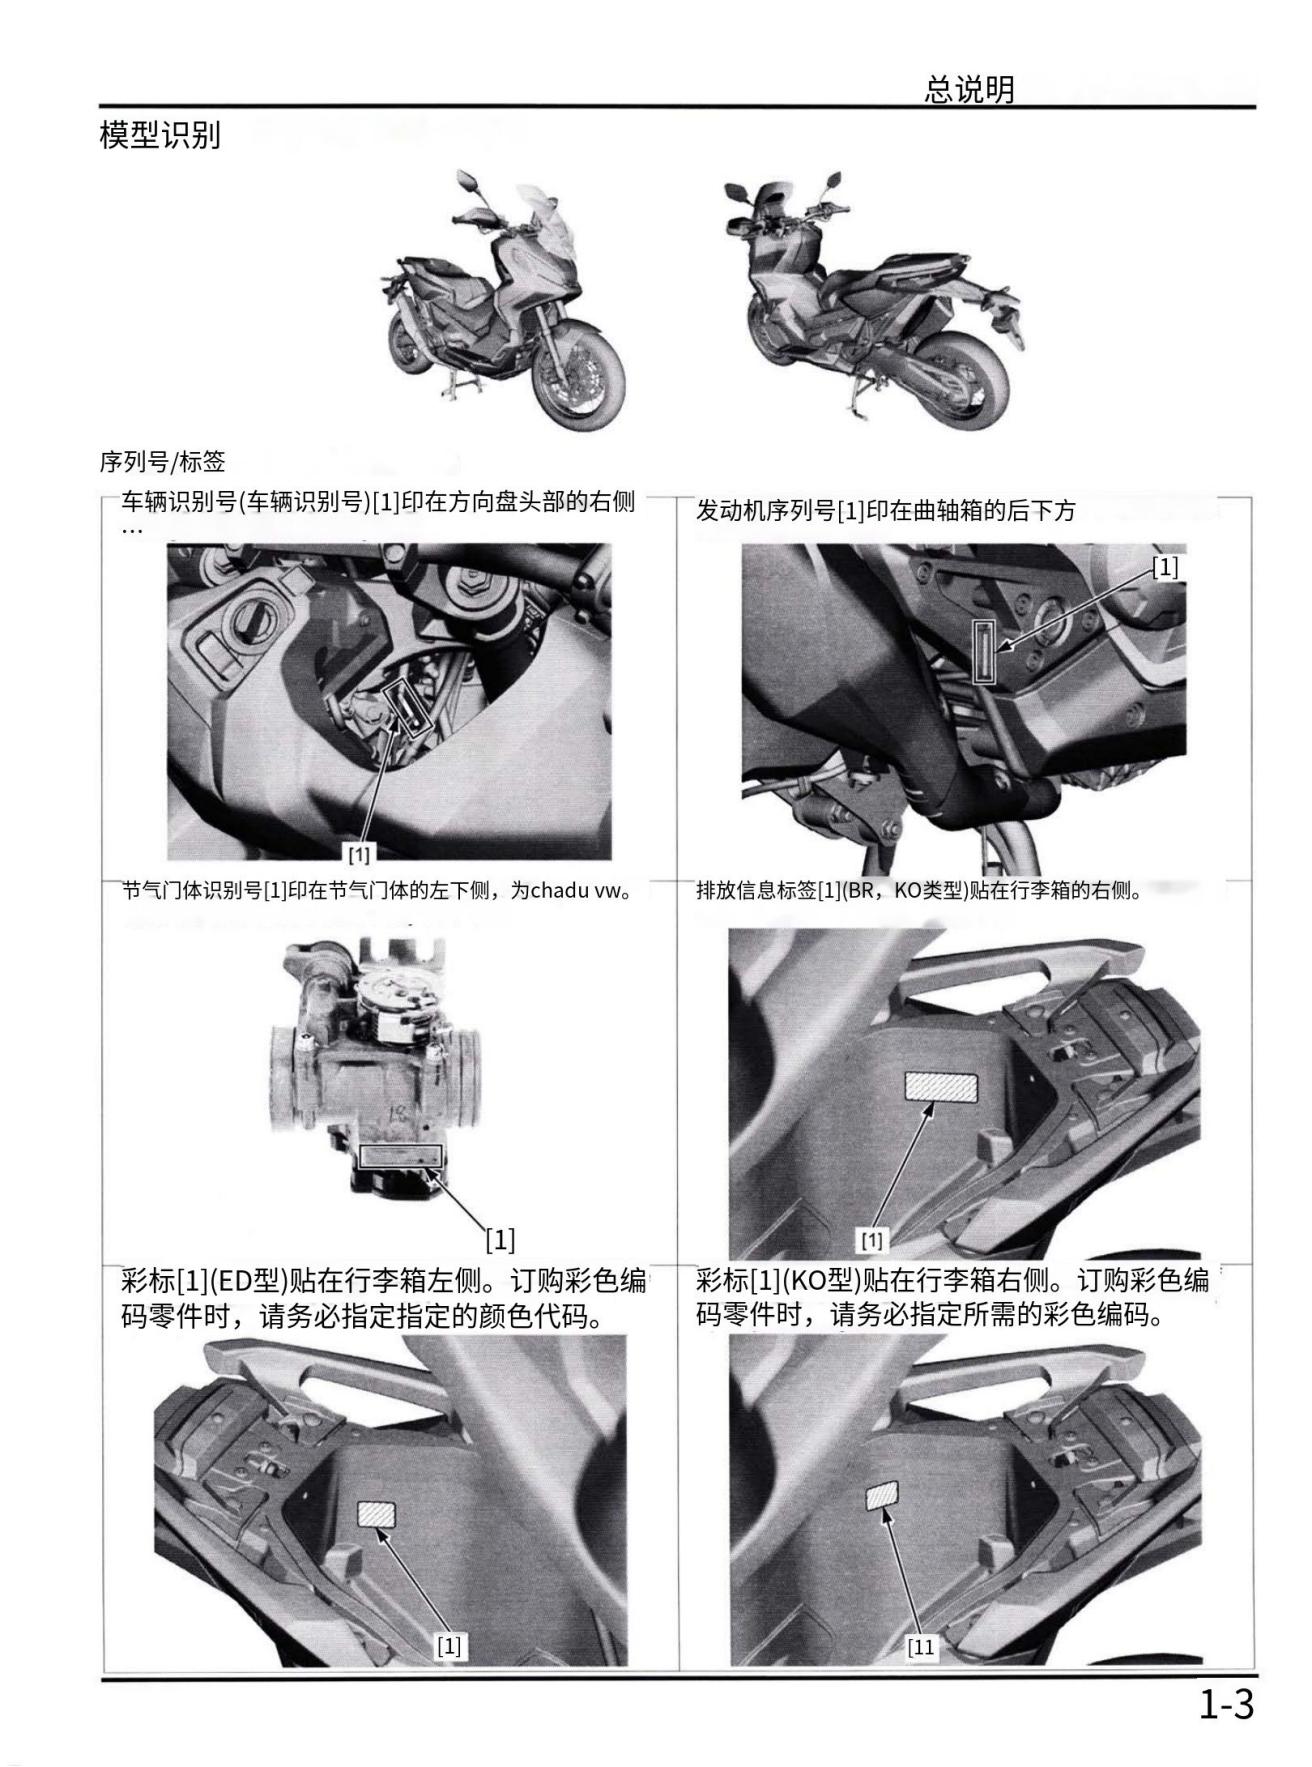 简体中文2017-2020本田XADV750维修手册Honda XADV 750 2017插图2